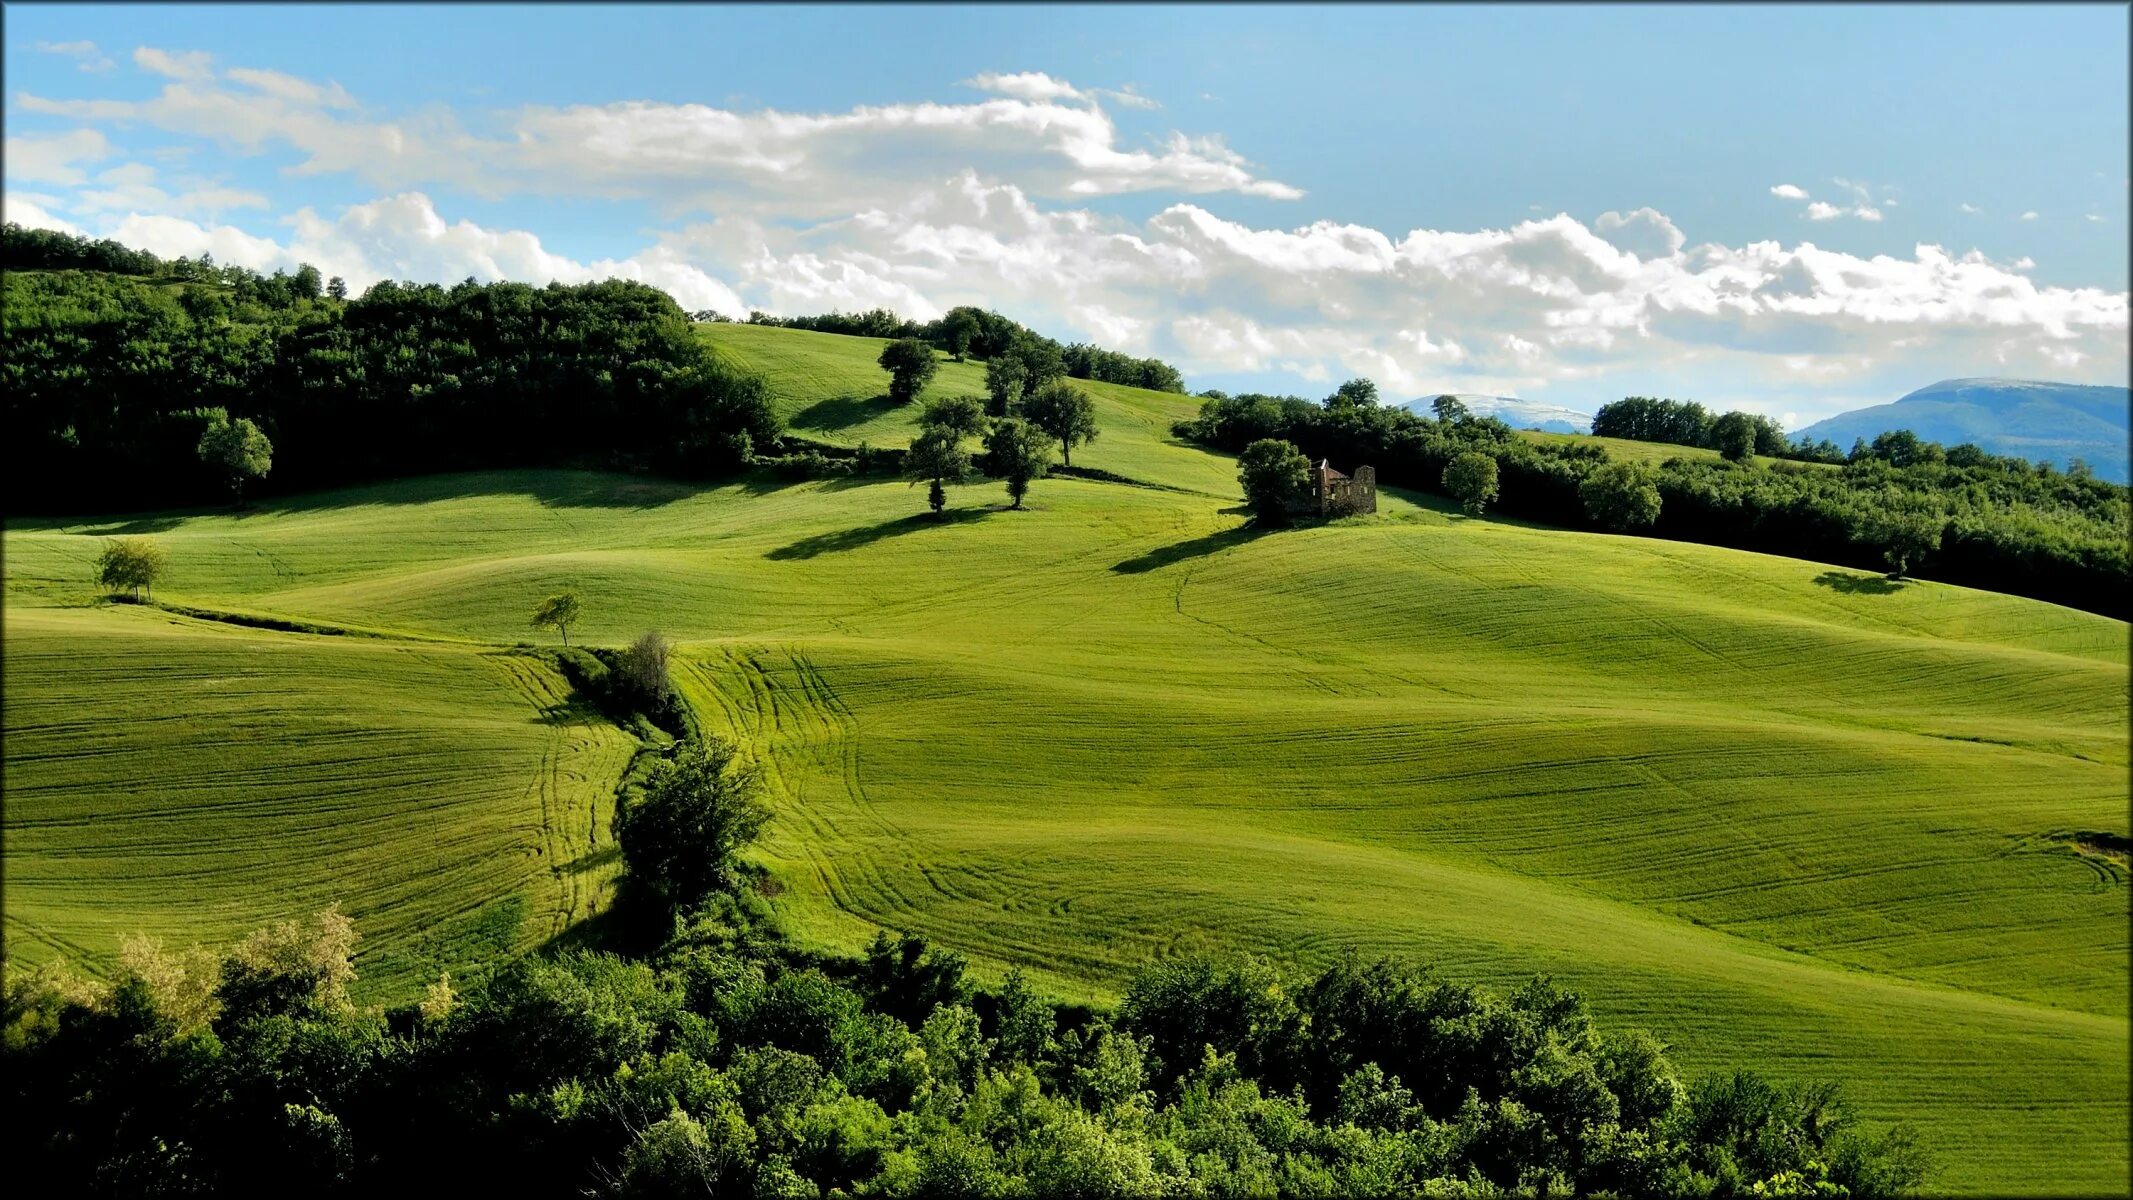 З холма. Паданская равнина Италия. Штирийско-бургенландская Холмистая равнина. Green Hills зеленые холмы.